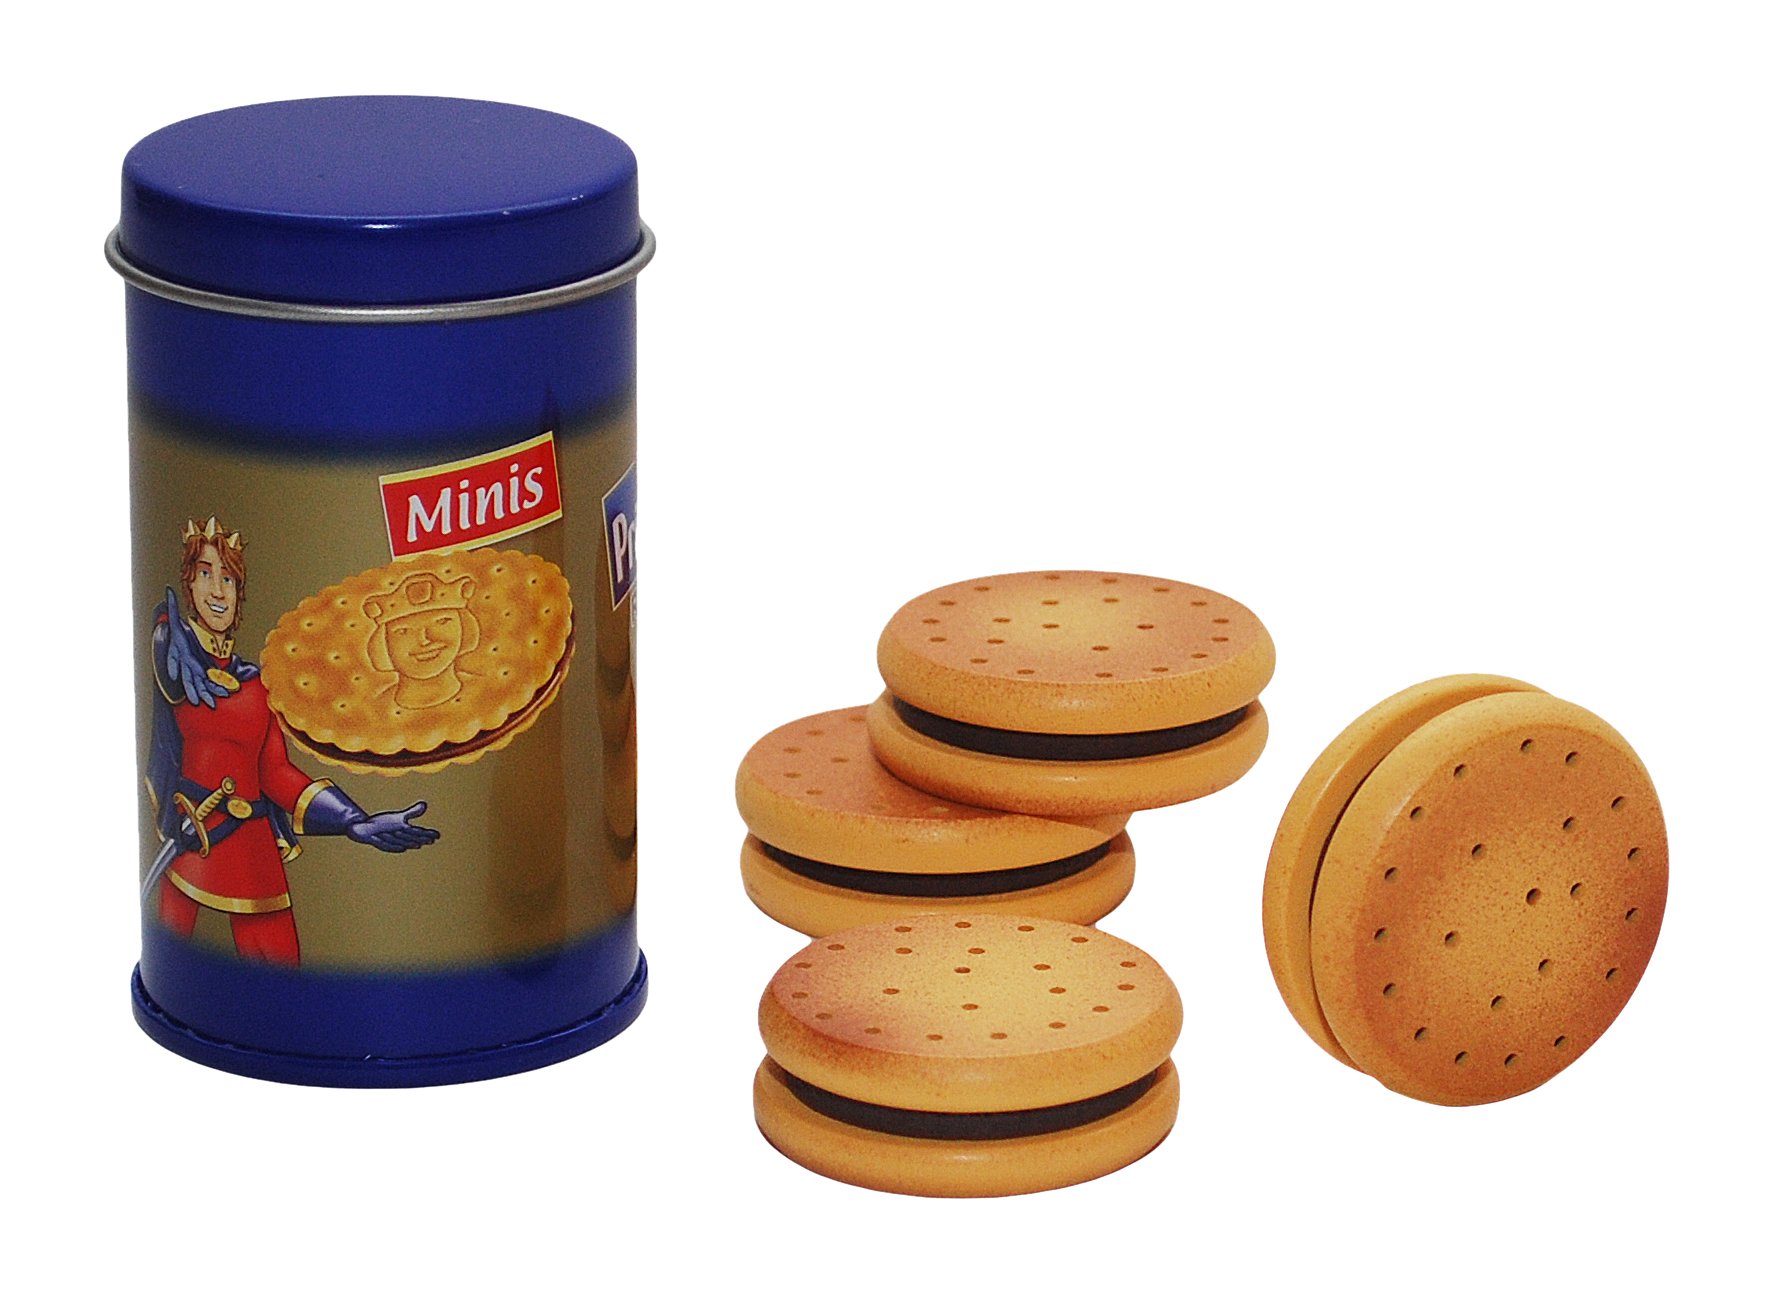 Parfait Tanner - 9255 - Nourriture pour Jouets - Biscuits - Prinzenrolle jx5yGx0Qz mode